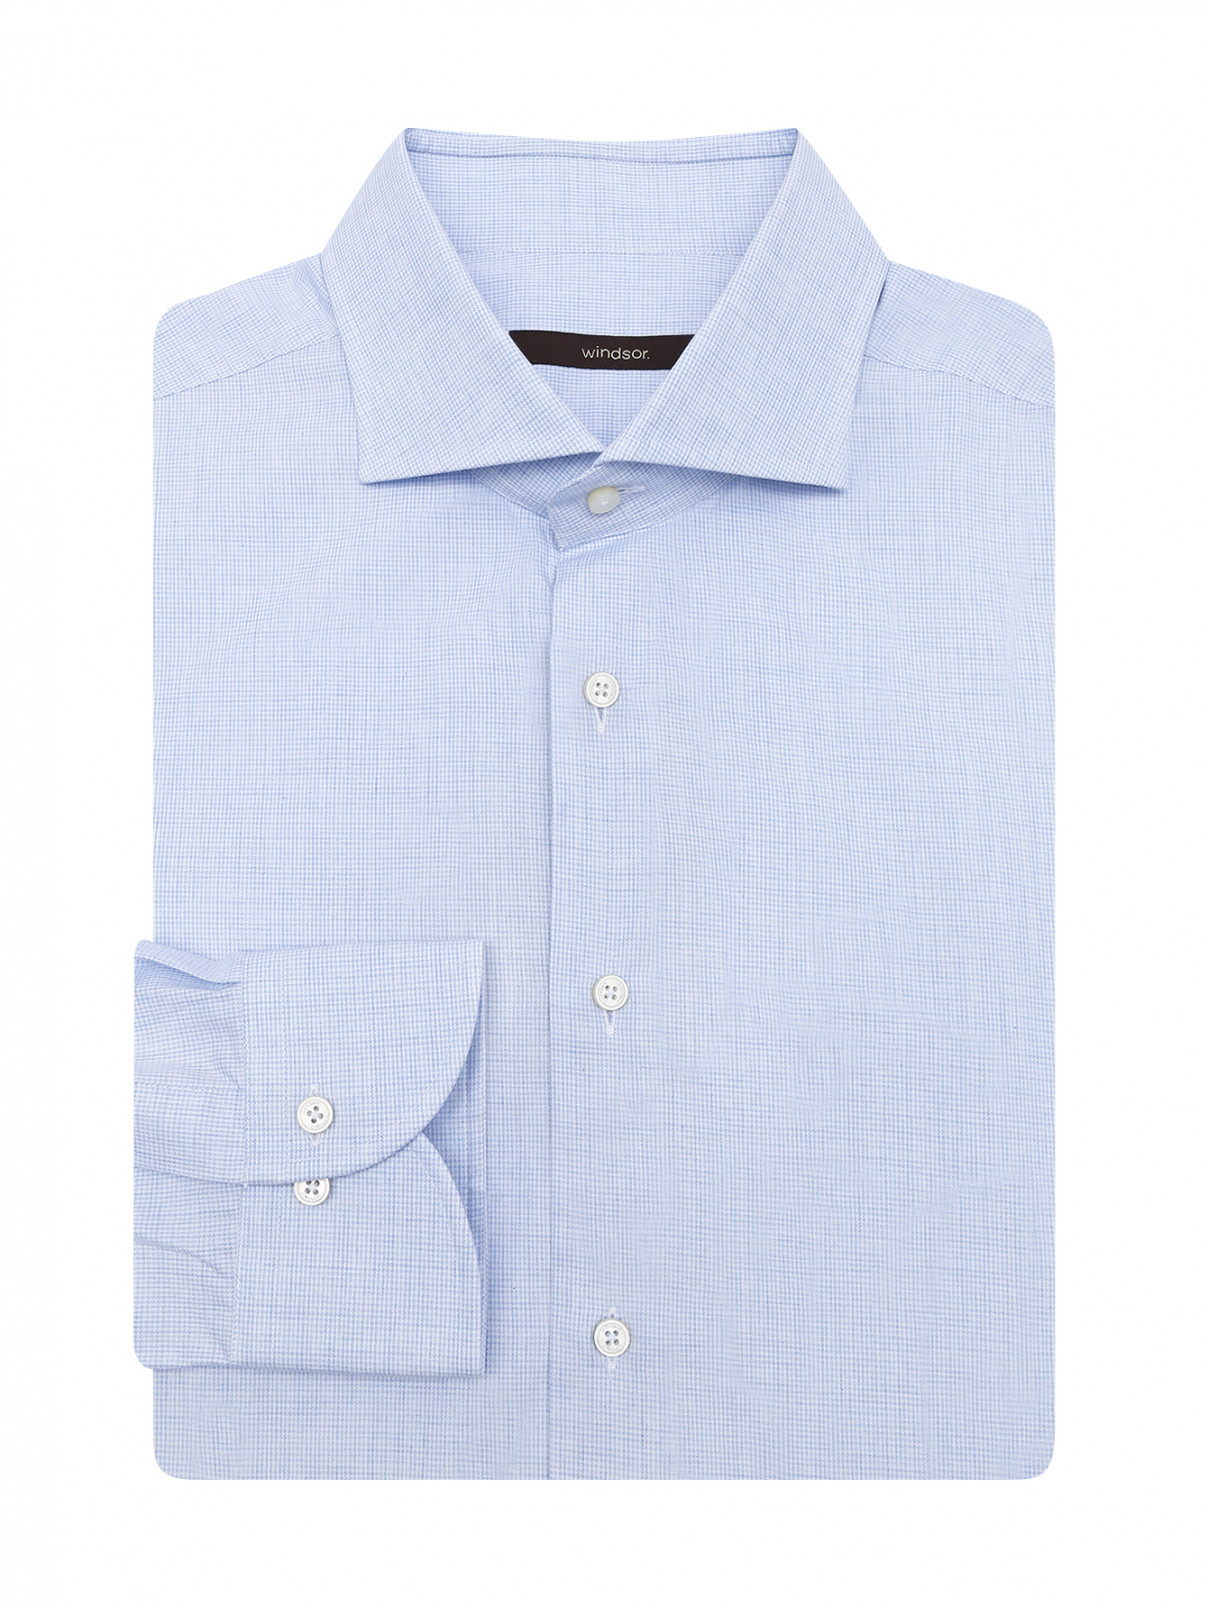 Рубашка из хлопка с узором Windsor  –  Общий вид  – Цвет:  Узор